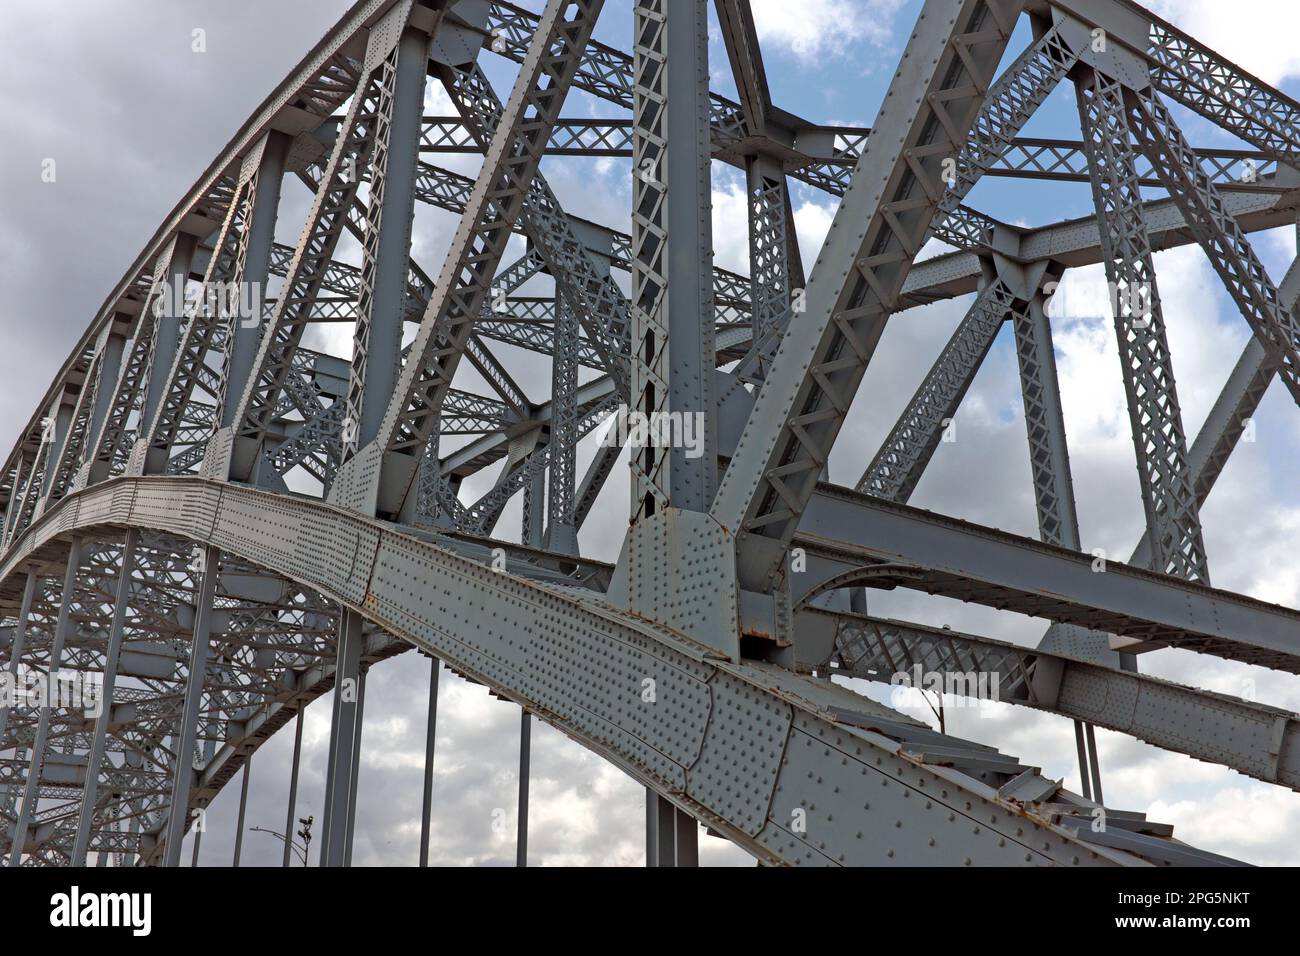 Die Stahlinfrastruktur der Hochleistungs-Druckbogen-Hängebrücke in Cleveland, Ohio, wurde in Veterans Memorial Bridge umbenannt. Stockfoto